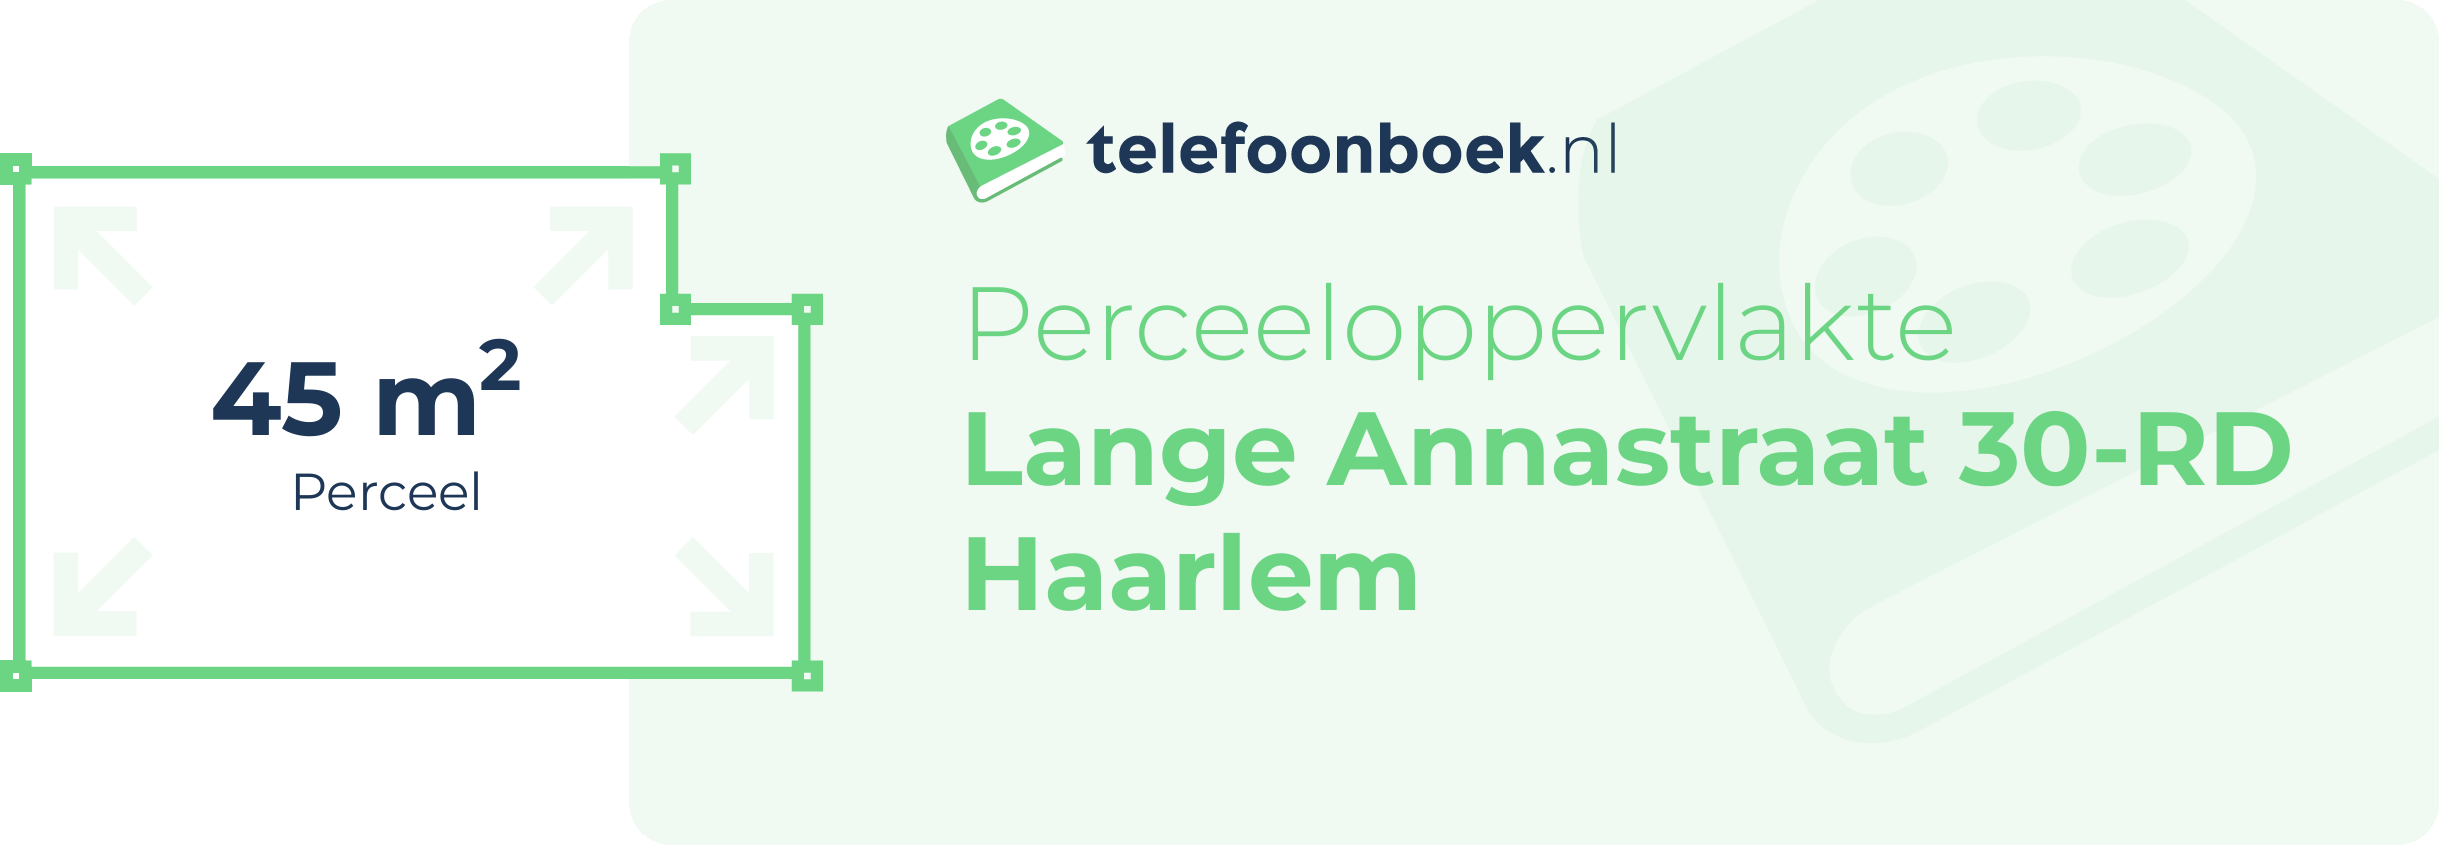 Perceeloppervlakte Lange Annastraat 30-RD Haarlem